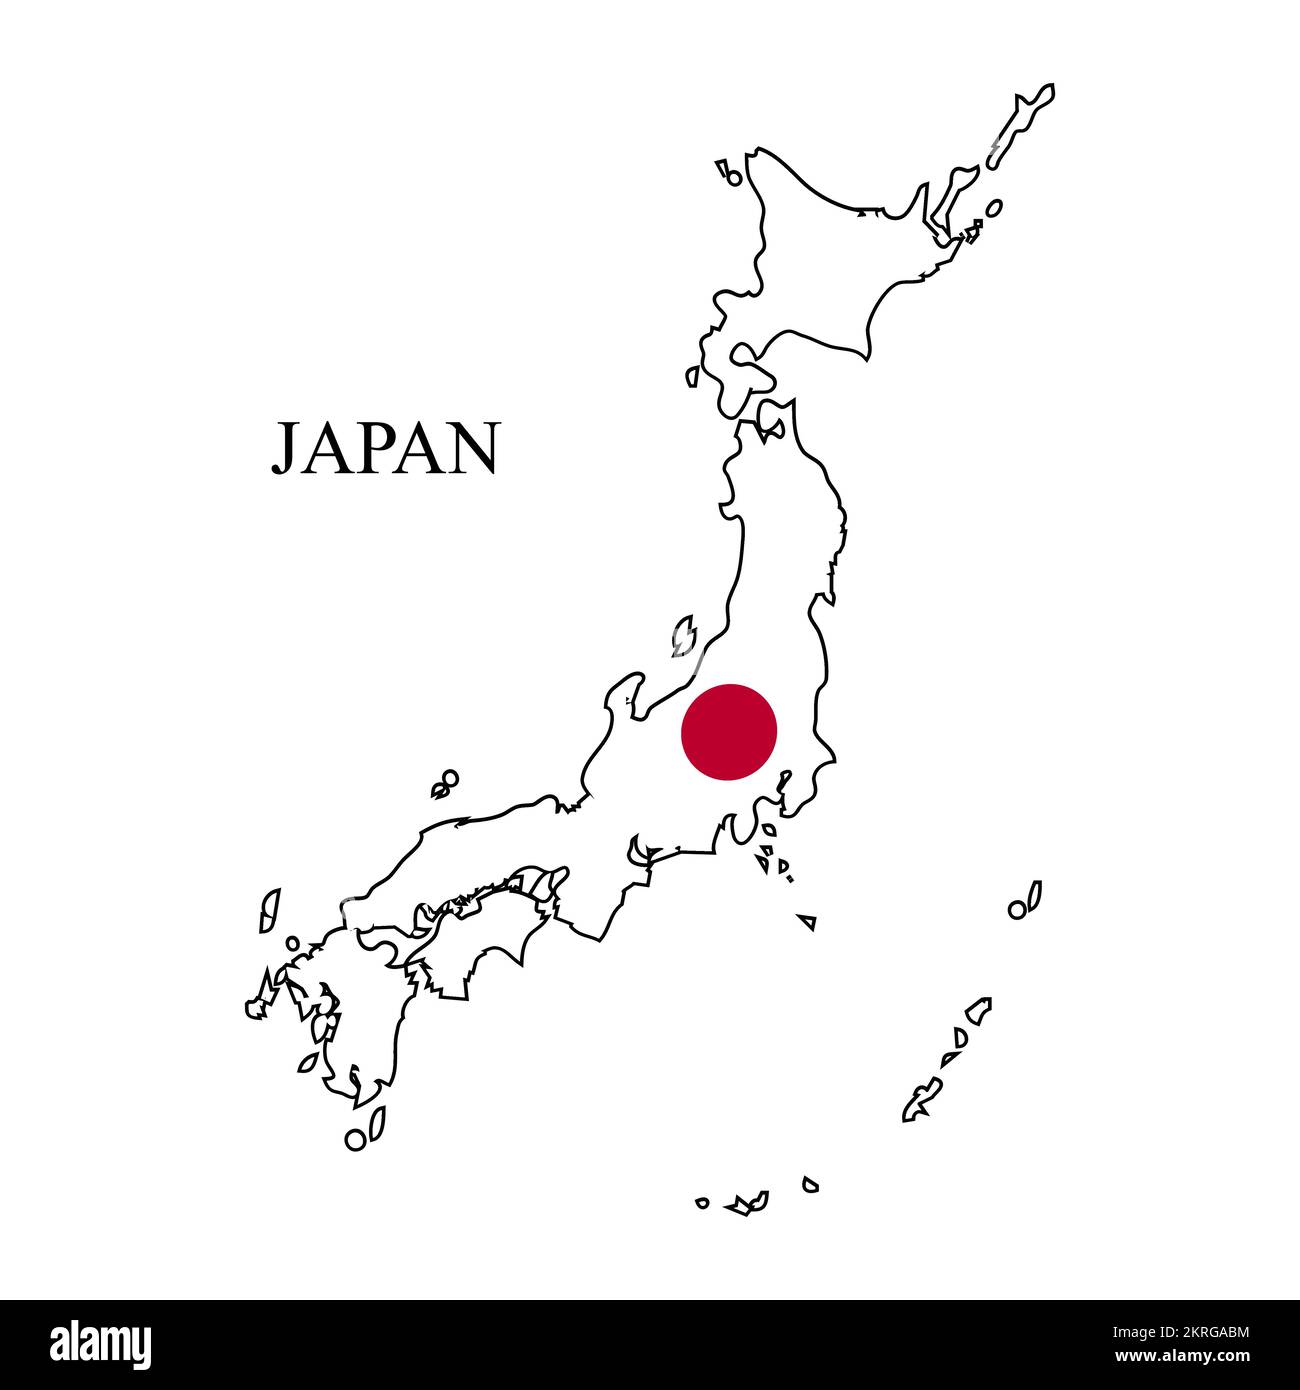 Darstellung des japanischen Kartenvektors. Weltwirtschaft. Berühmtes Land. Ostasien Stock Vektor